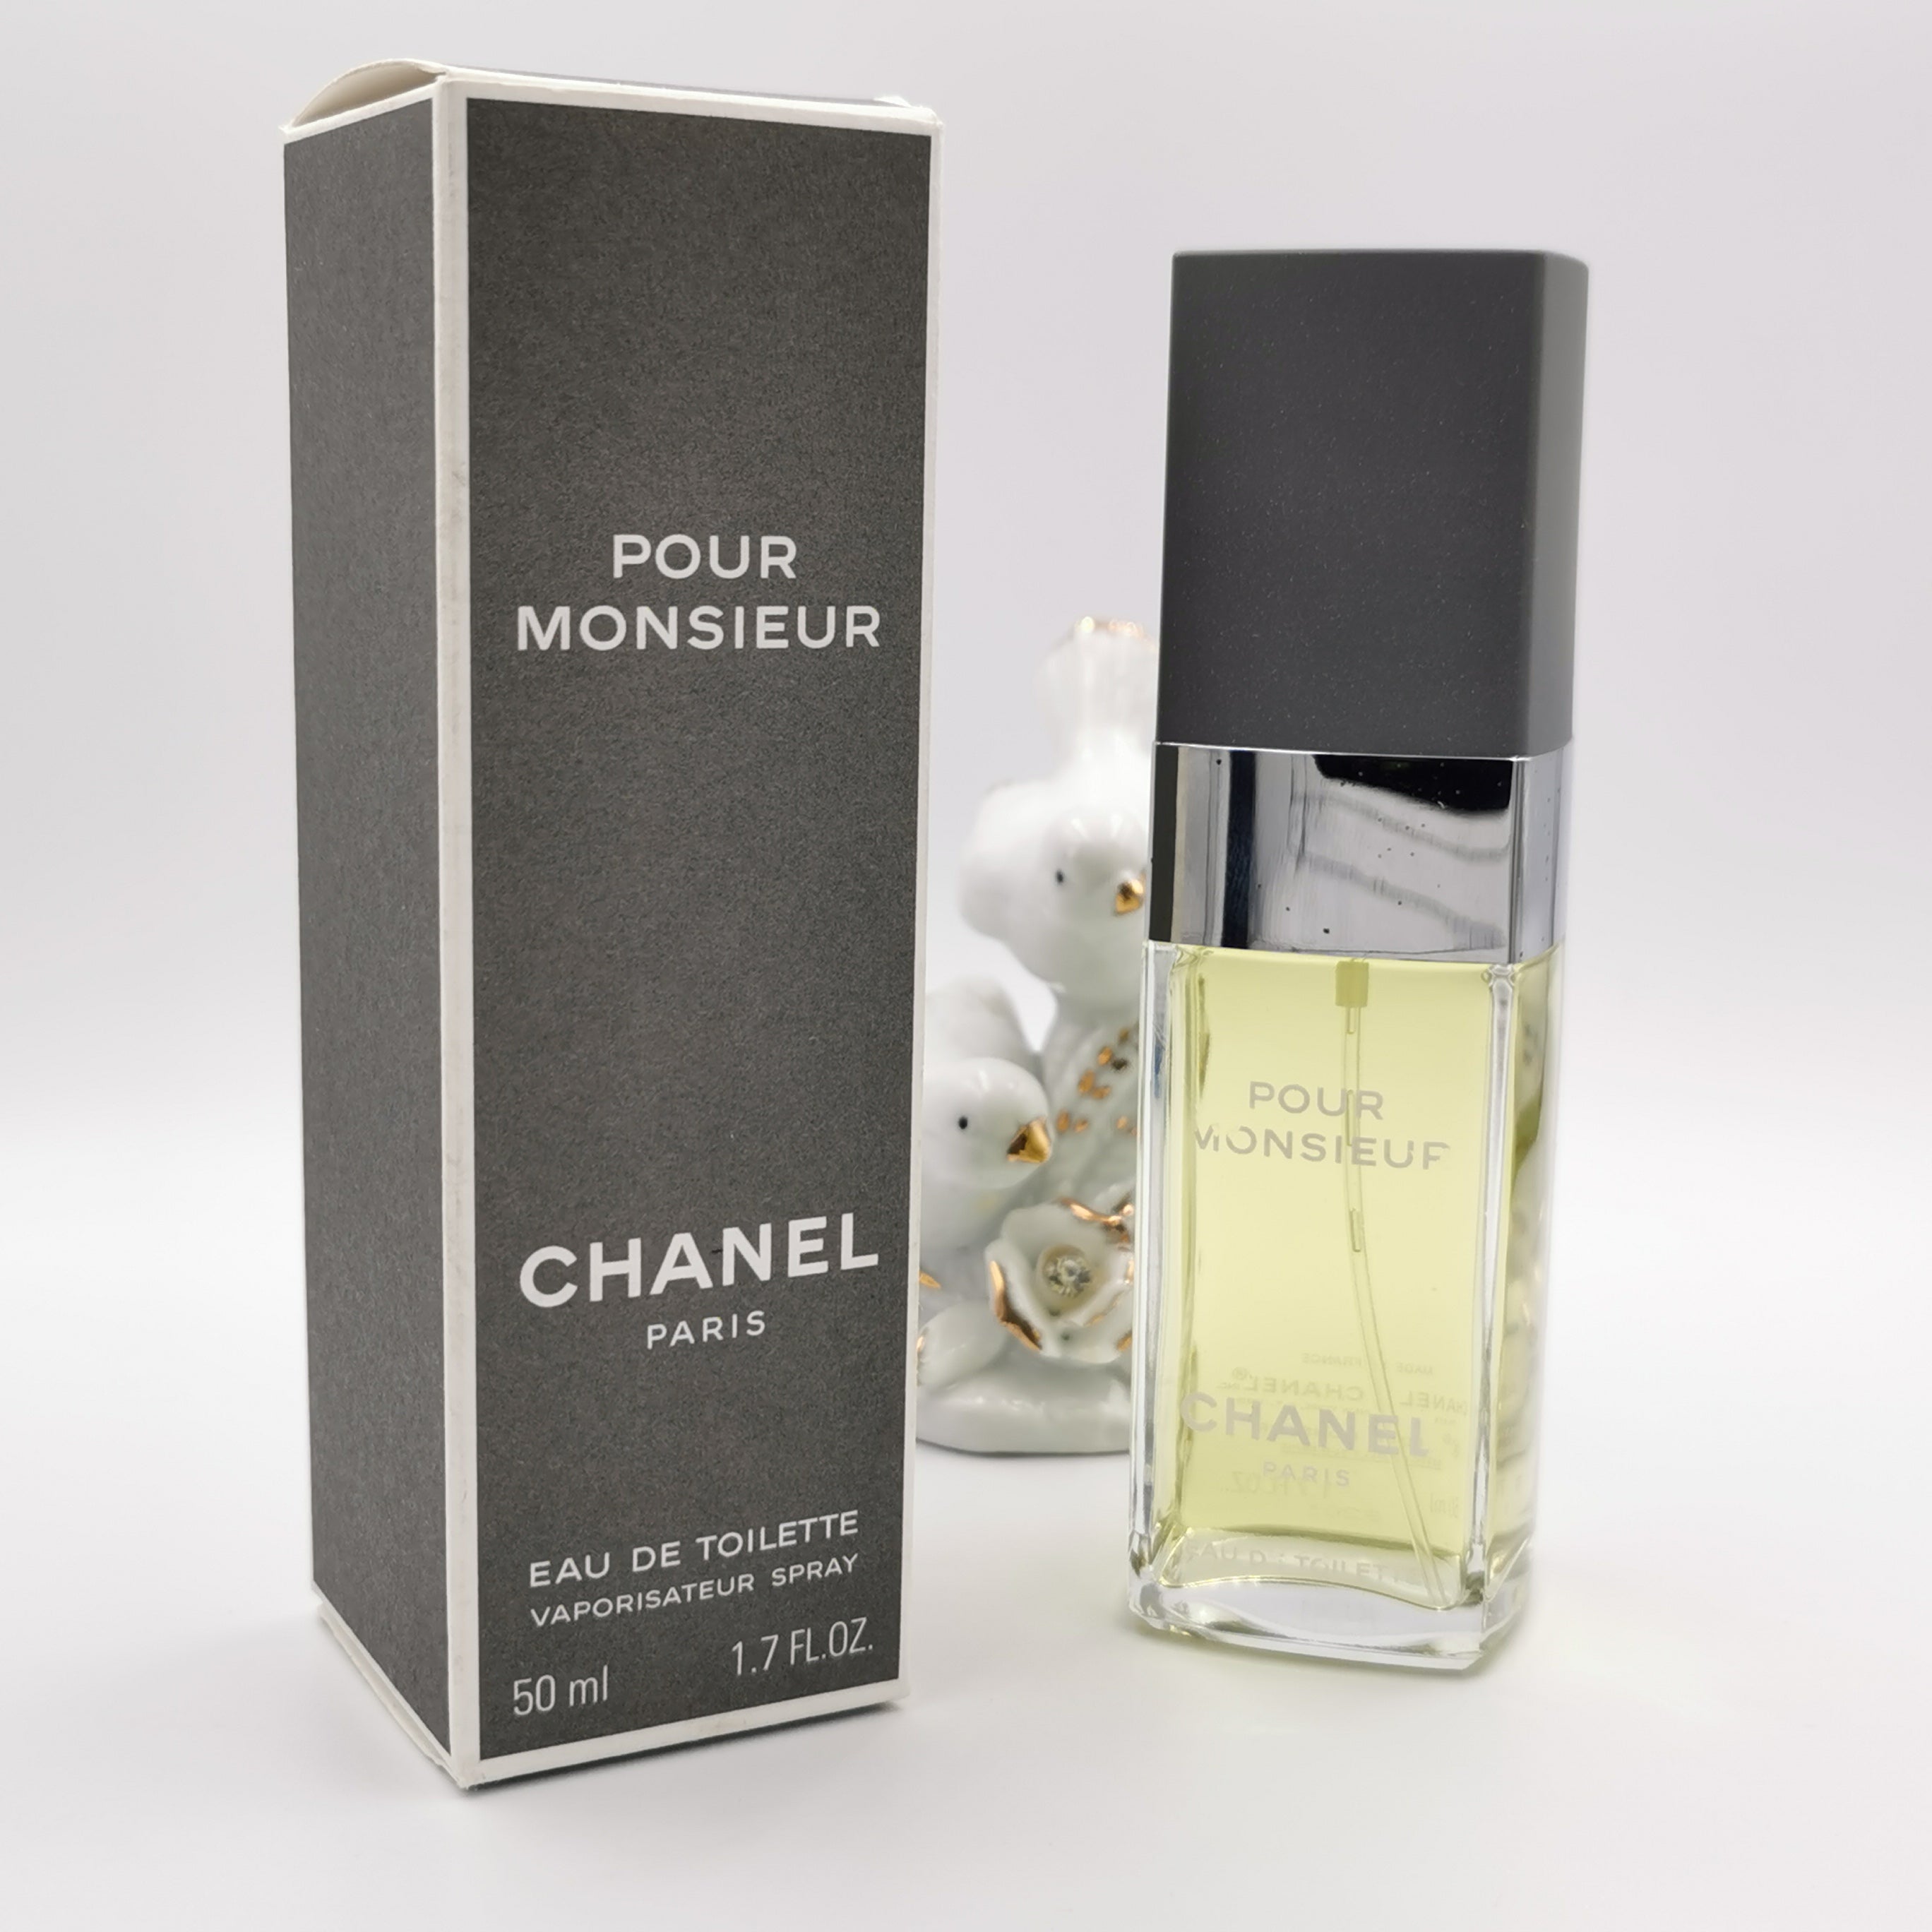 Chanel - Pour Monsieur - (1955) Bottle containing 400m…